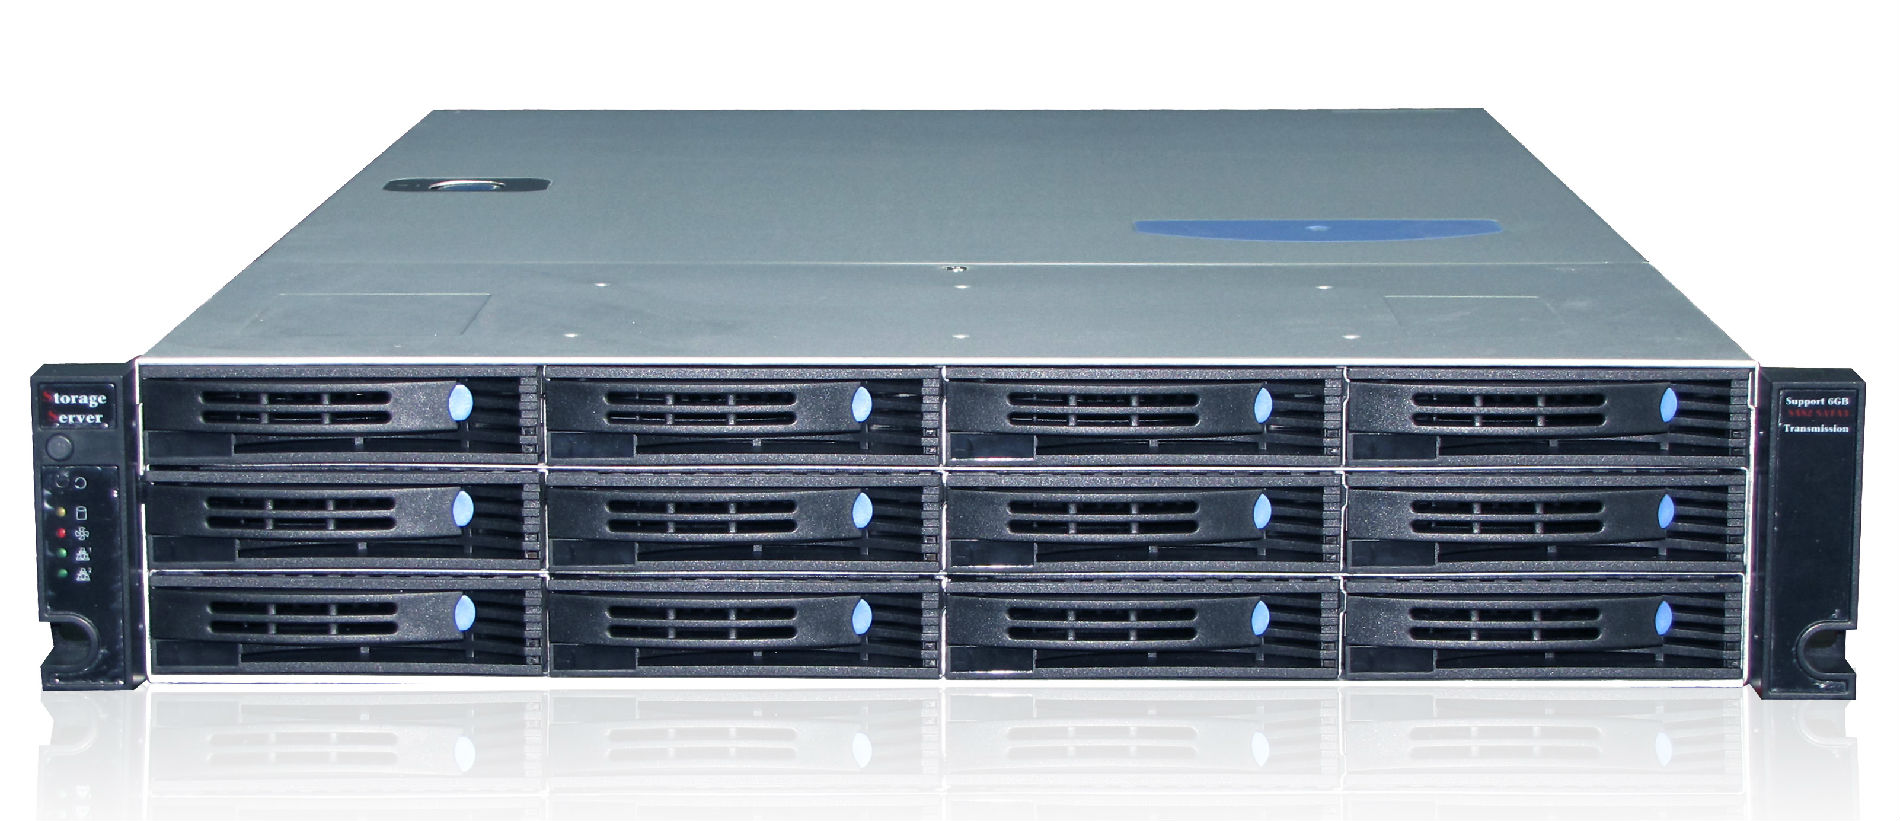 企业级网络存储系统-SP3012